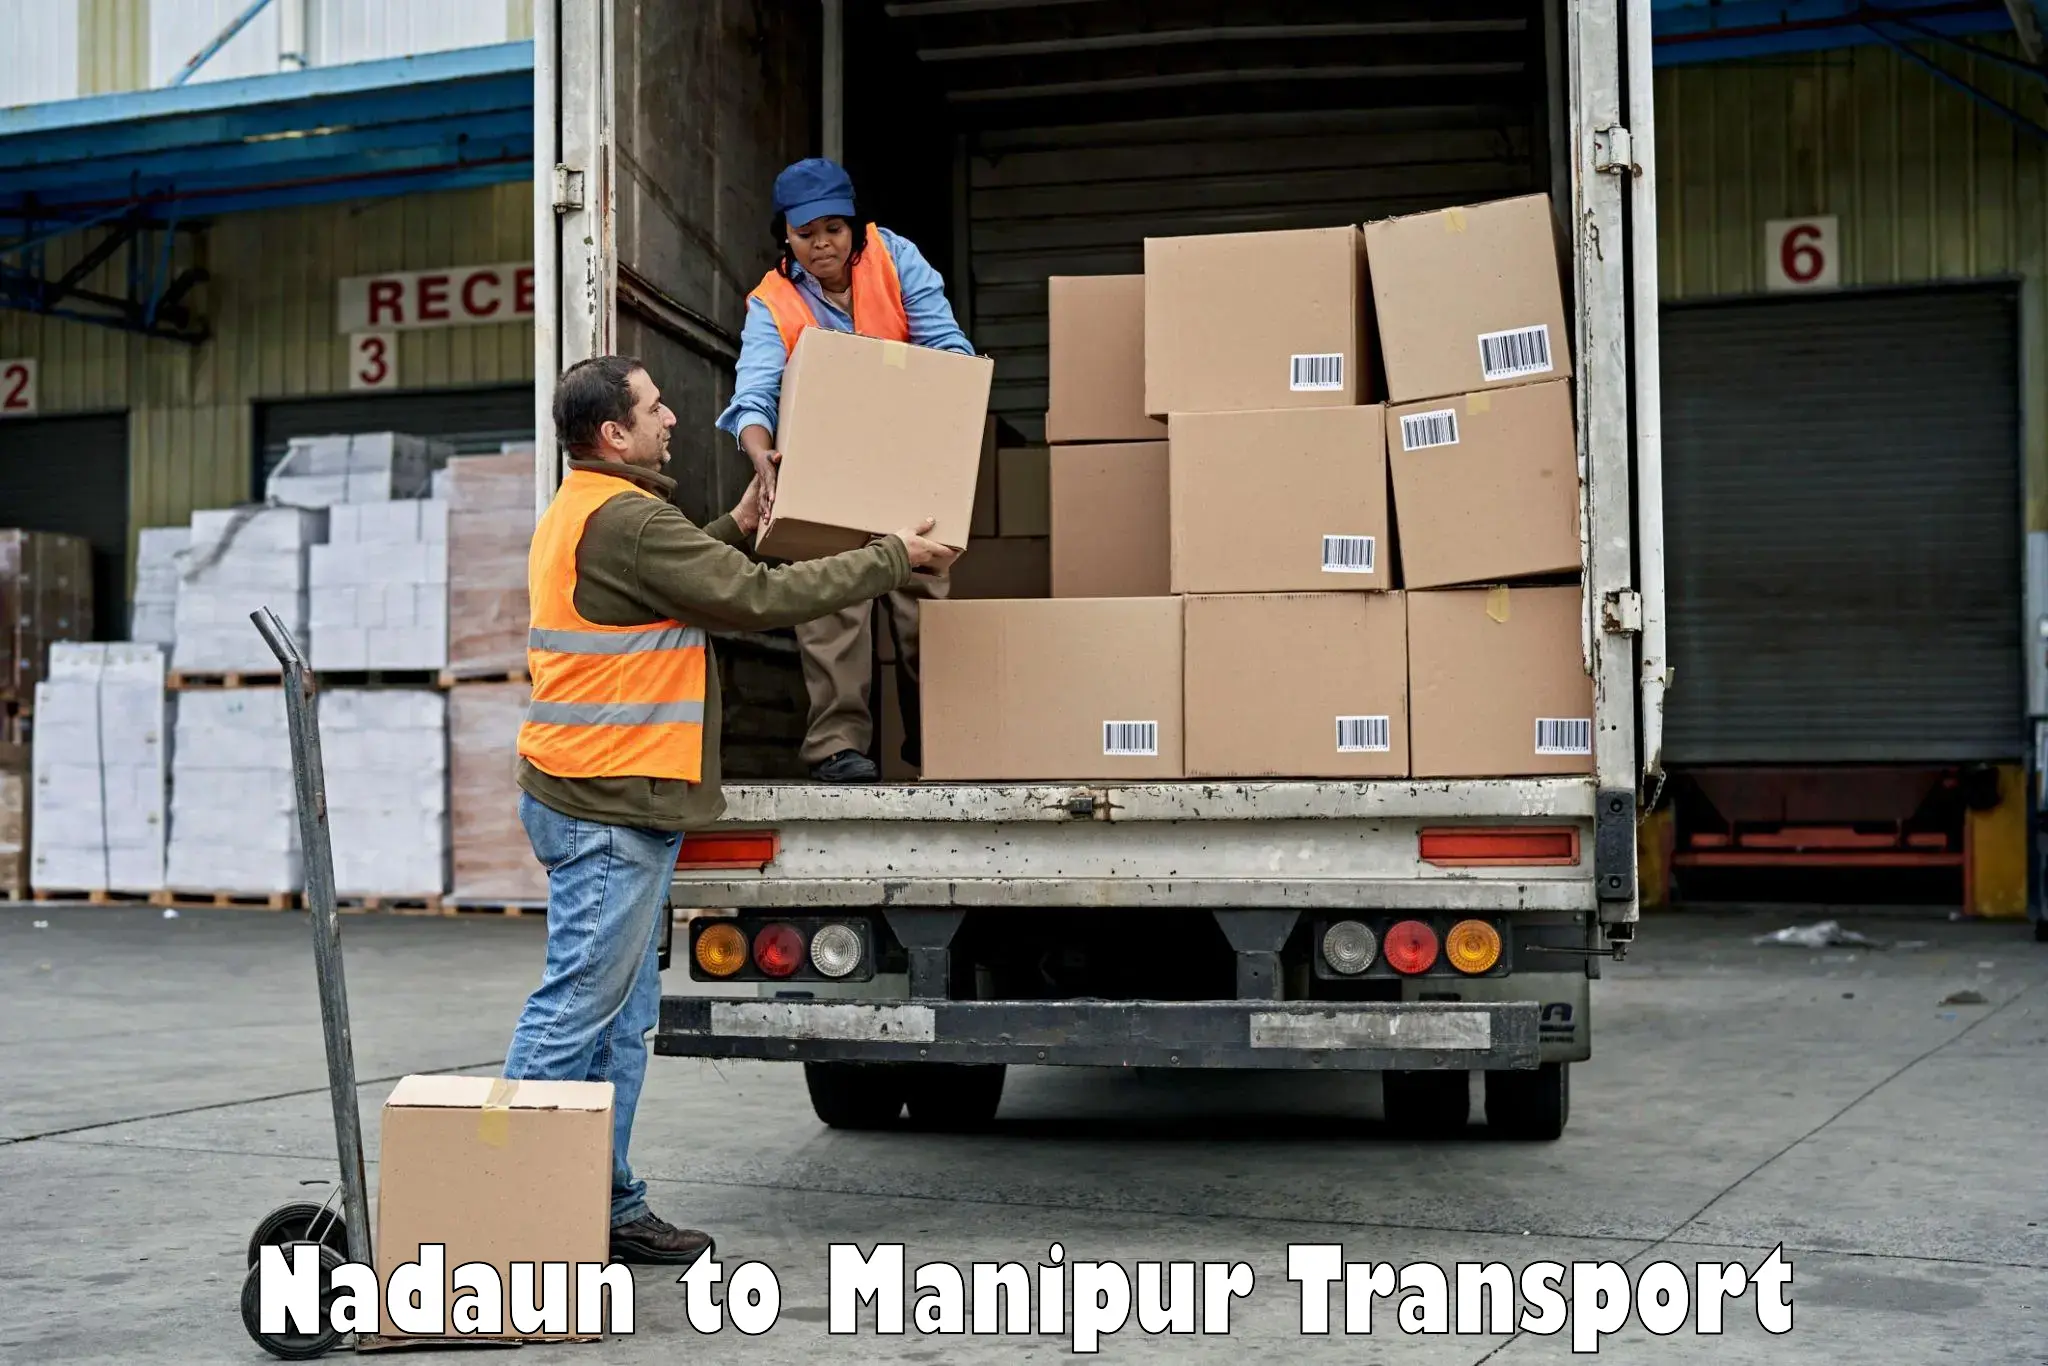 Transport in sharing Nadaun to Manipur